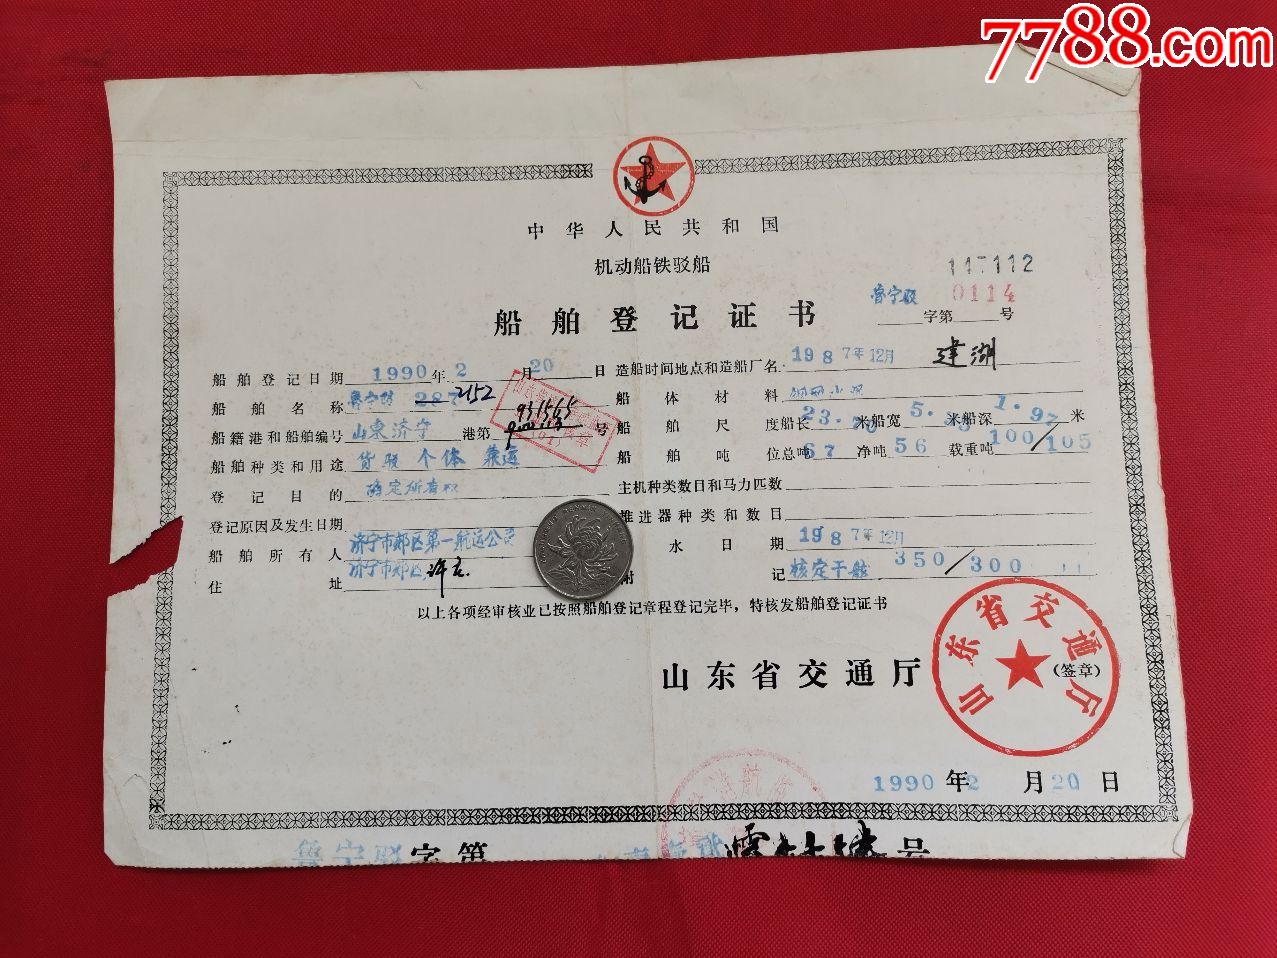 机动船铁驳船船舶登记证书背面附照片1990年山东济宁